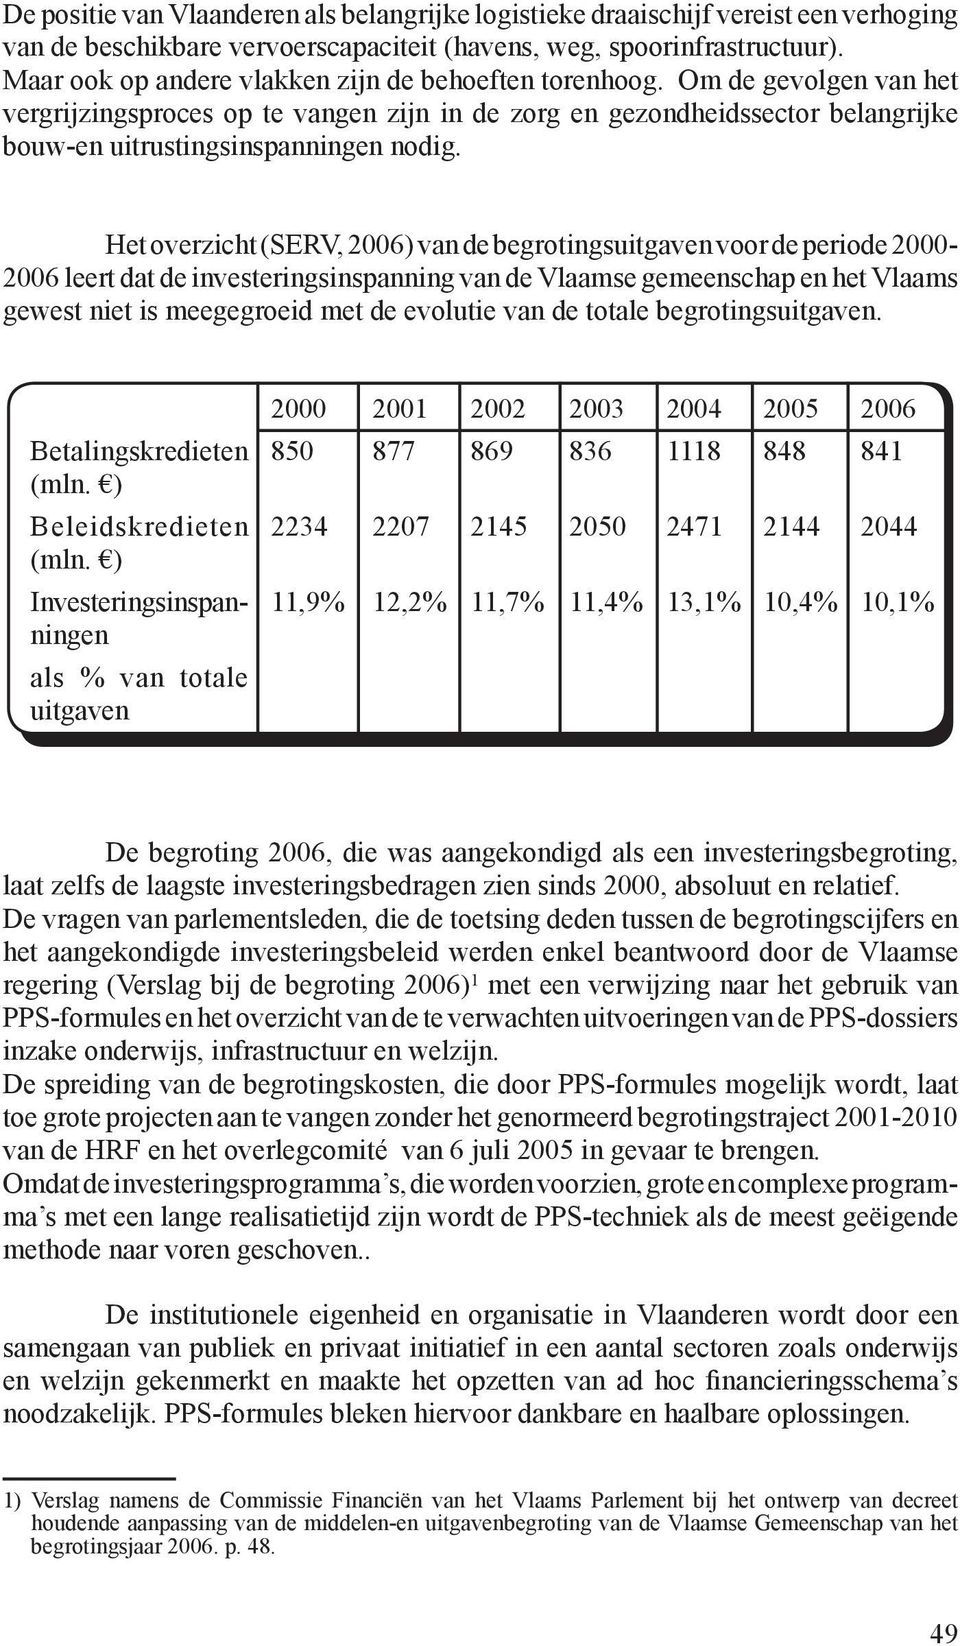 Het overzicht (SERV, 2006) van de begrotingsuitgaven voor de periode 2000-2006 leert dat de investeringsinspanning van de Vlaamse gemeenschap en het Vlaams gewest niet is meegegroeid met de evolutie